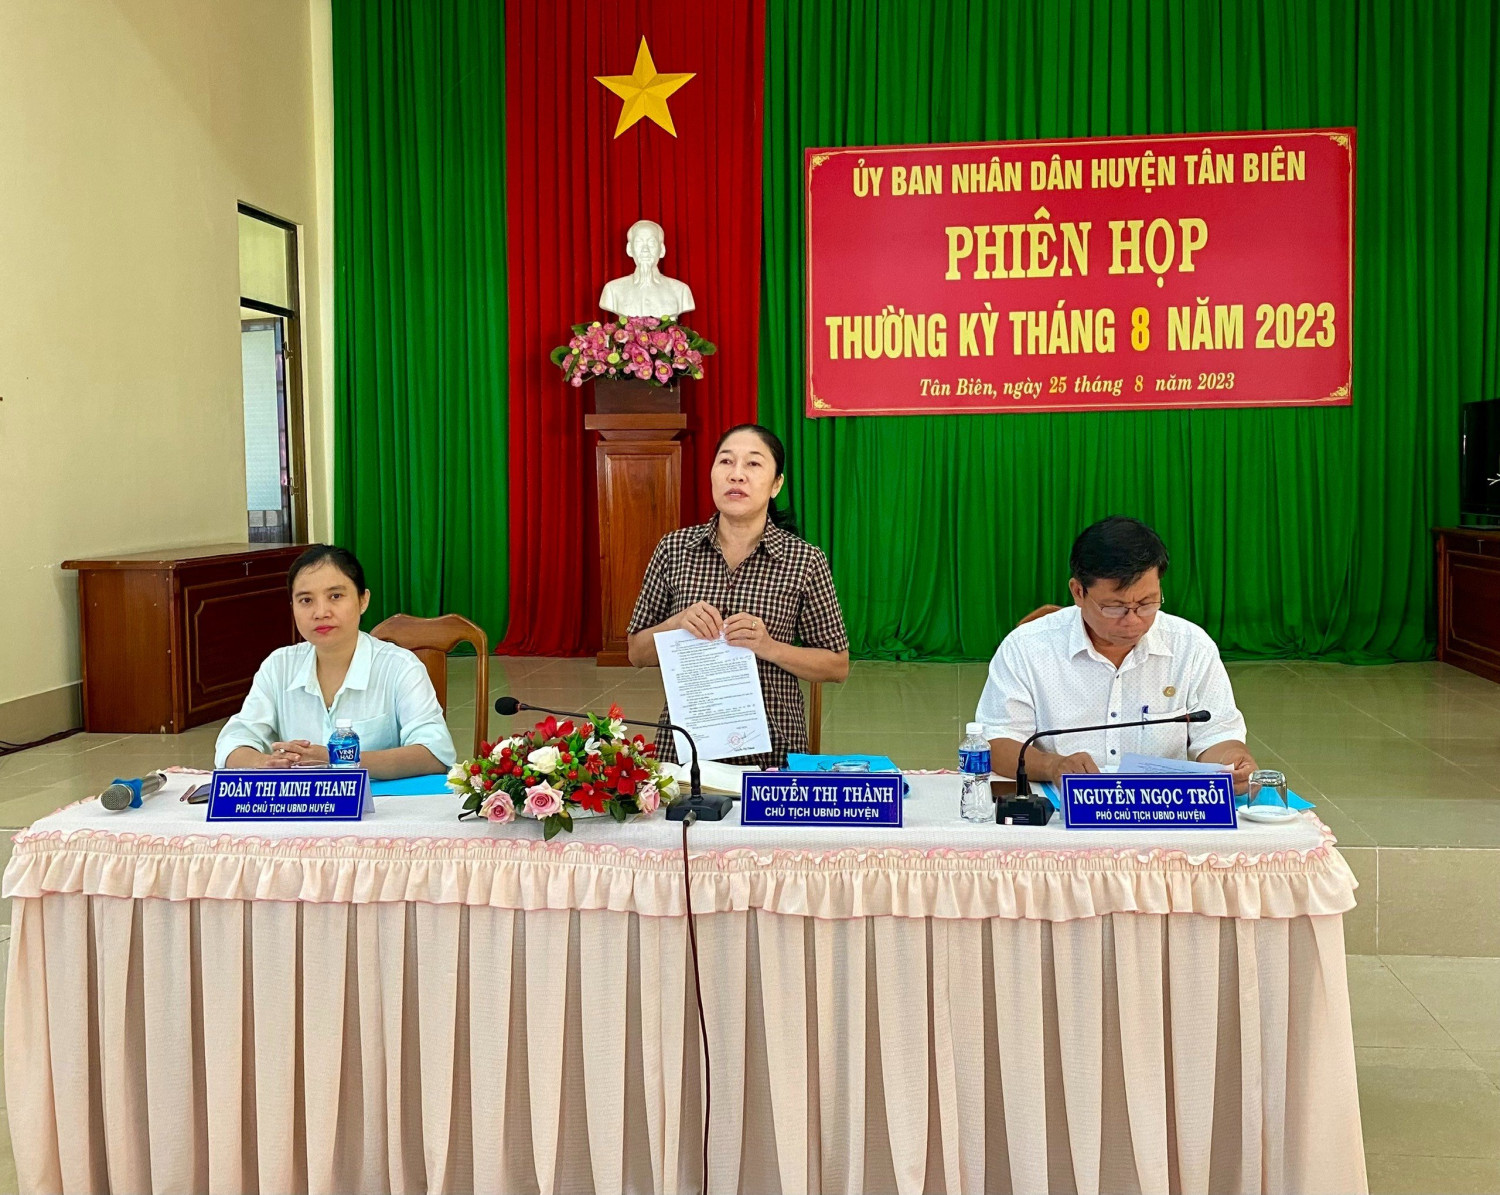 Ủy ban nhân dân huyện Tân Biên họp thường kỳ tháng 8 năm 2023